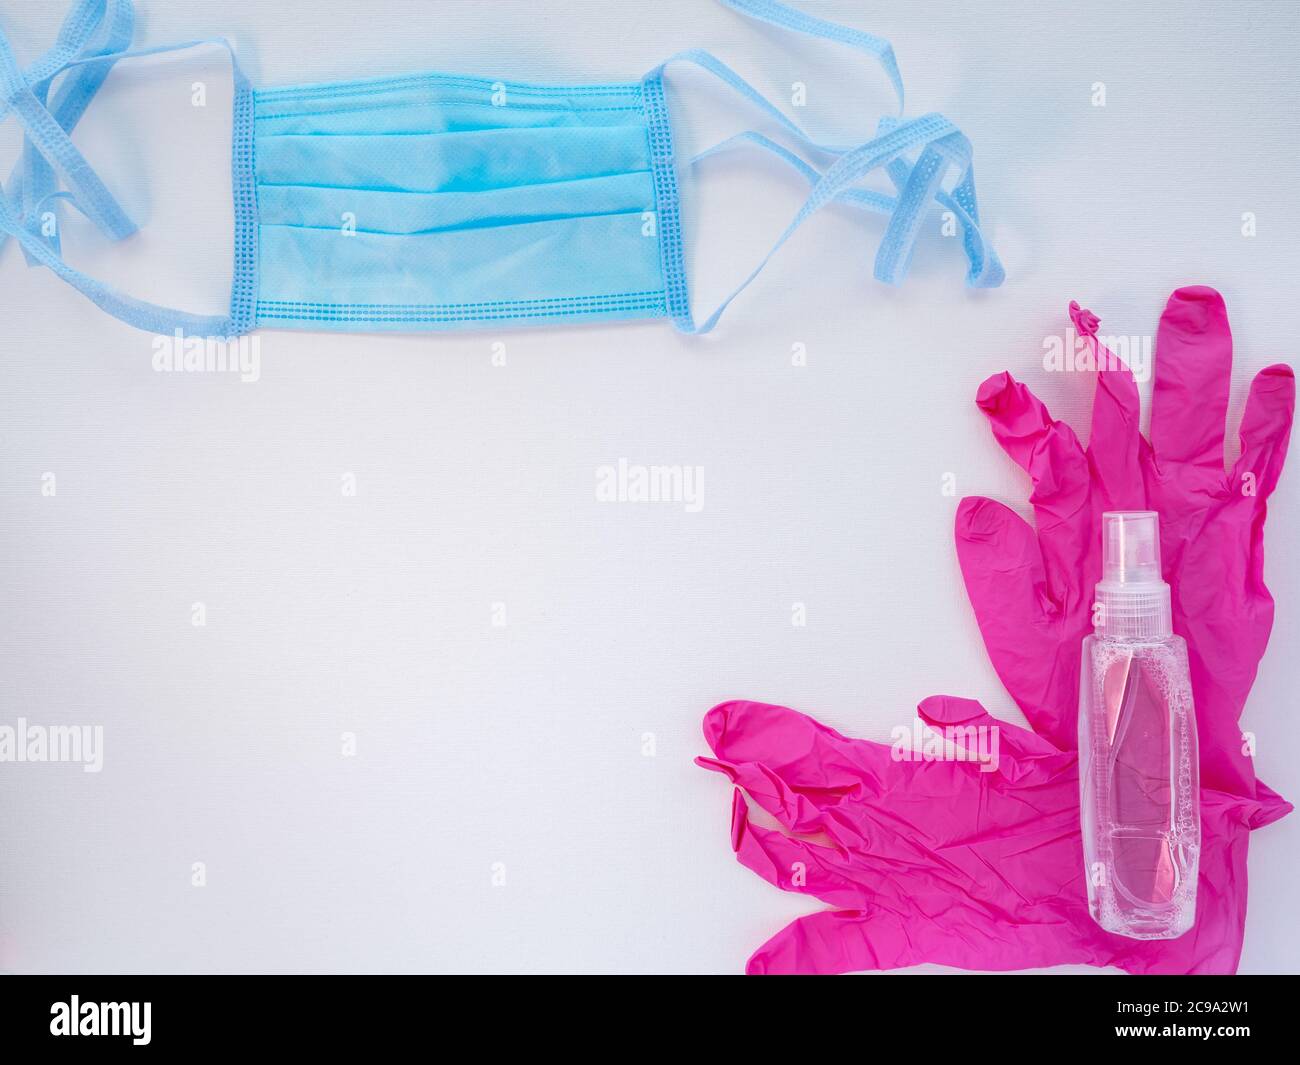 Masque médical de protection bleu, une paire de gants en latex rose et une bouteille de désinfectant pour les mains sur fond blanc. Protection antivirale pendant le covid. Banque D'Images